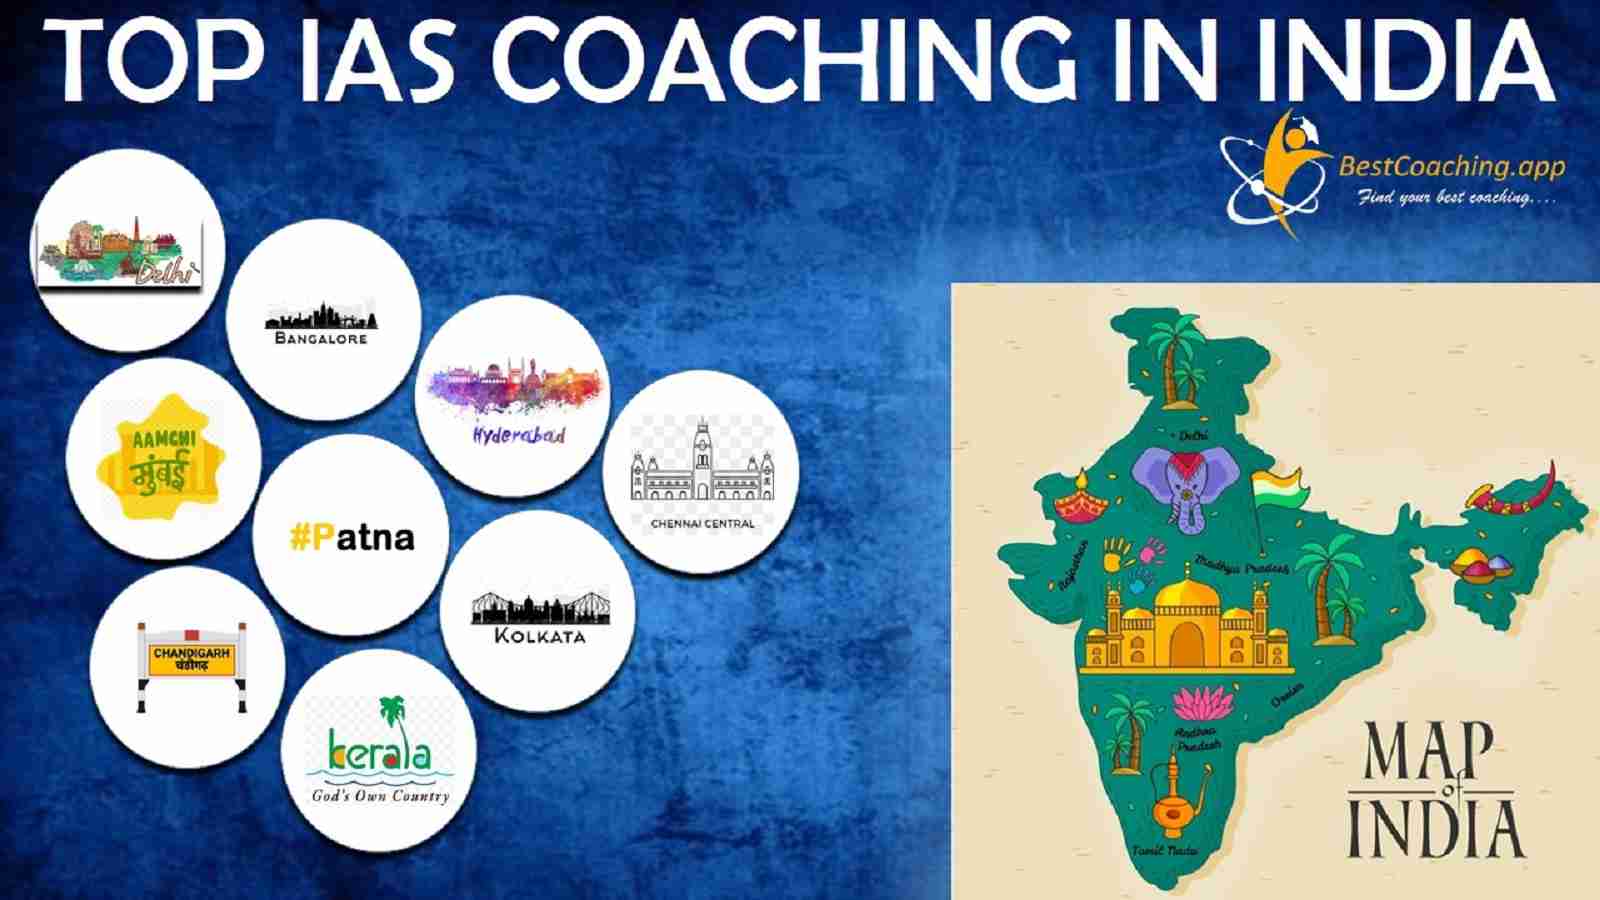 Top 10 IAS Coaching institutes in India